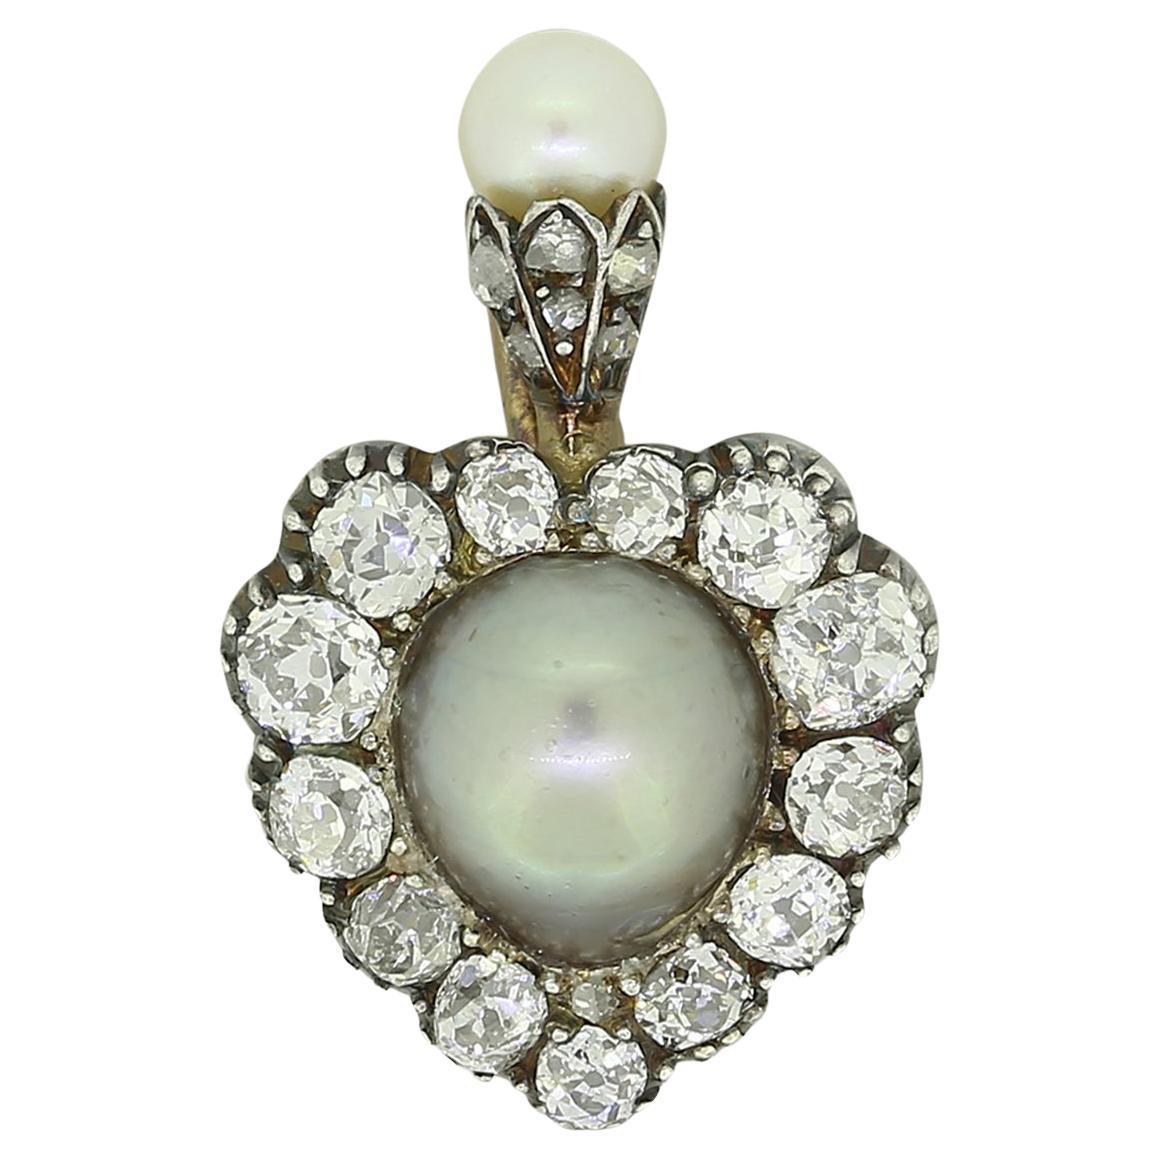 Pendentif victorien en forme de cœur avec perles et diamants